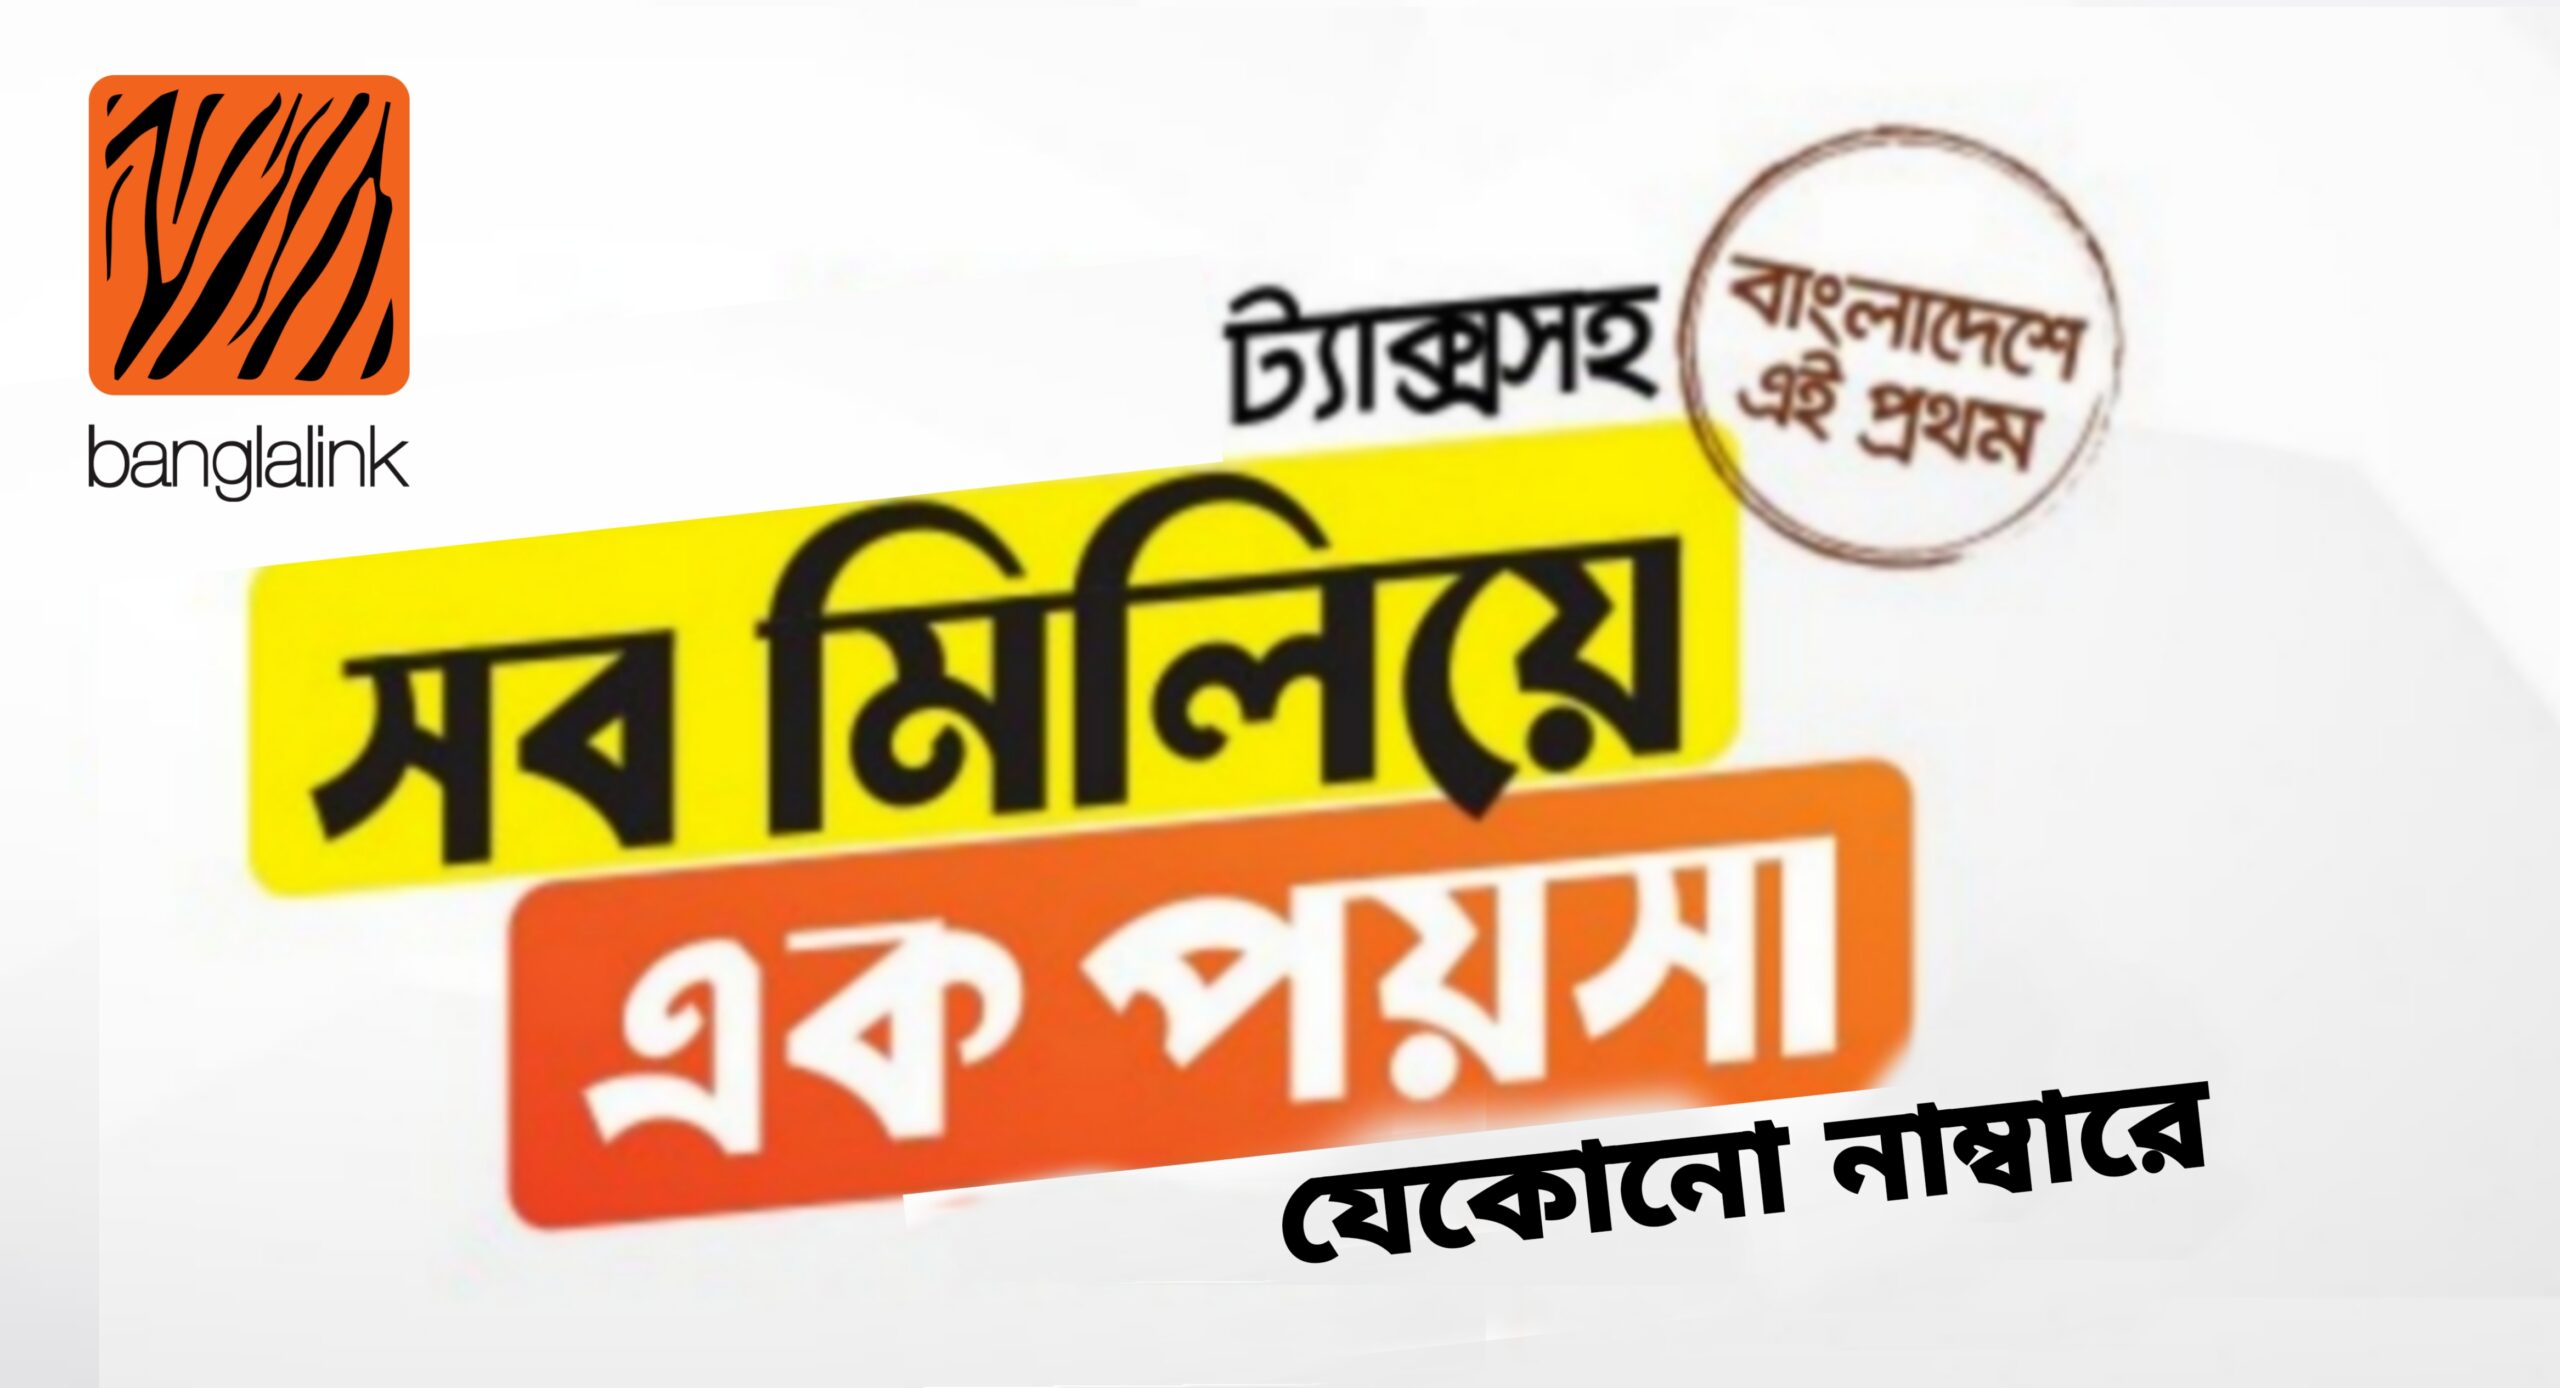 Banglalink recharge offer